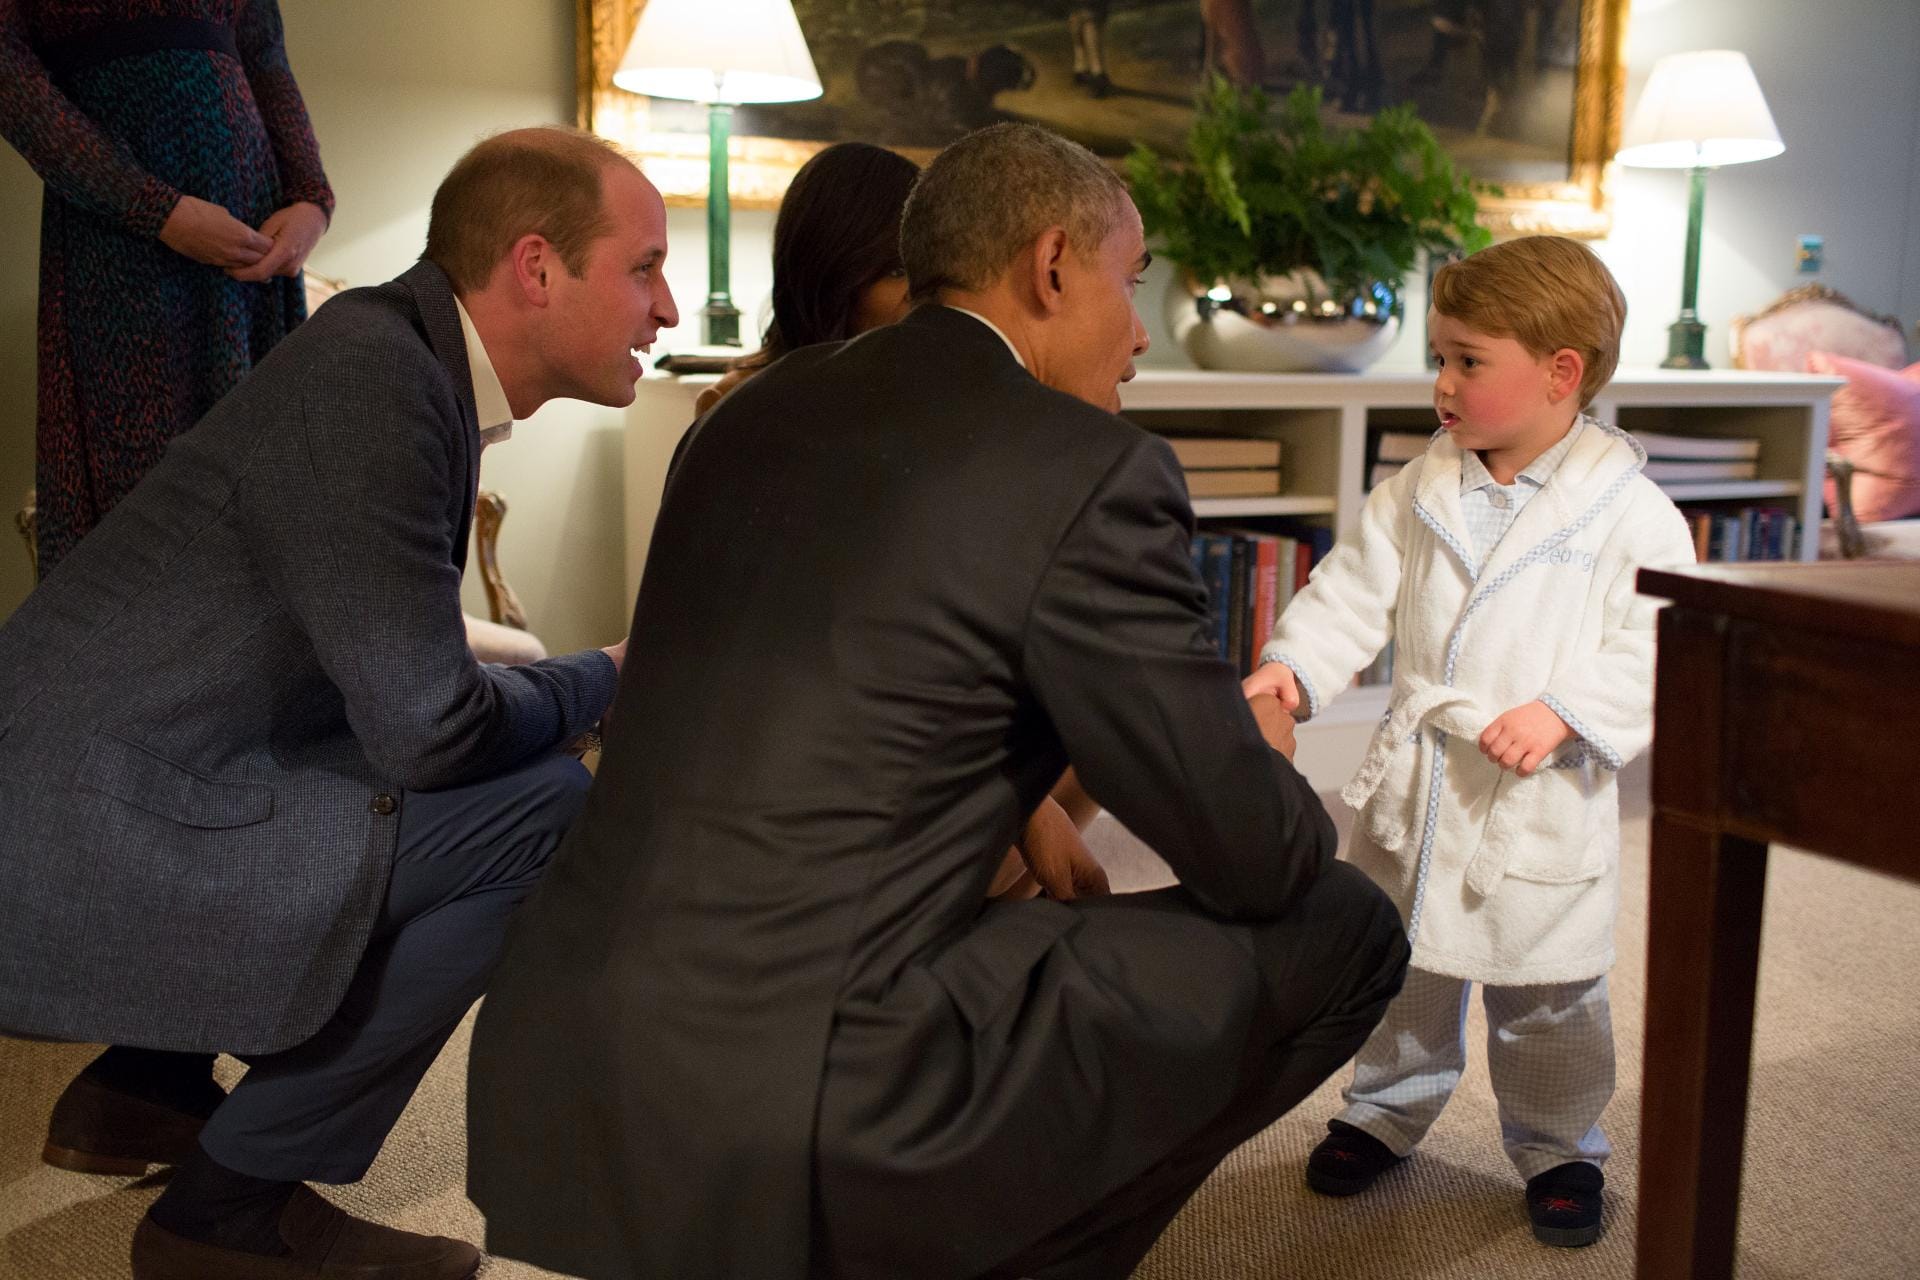 Bei Barack Obamas Besuch in Großbritannien traf der US-Präsident am 22. April 2016 auch auf Prinz George. Der Sohn von Prinz William und Herzogin Kate durfte eine Viertelstunde länger aufbleiben, um Obama eine gute Nacht zu wünschen.